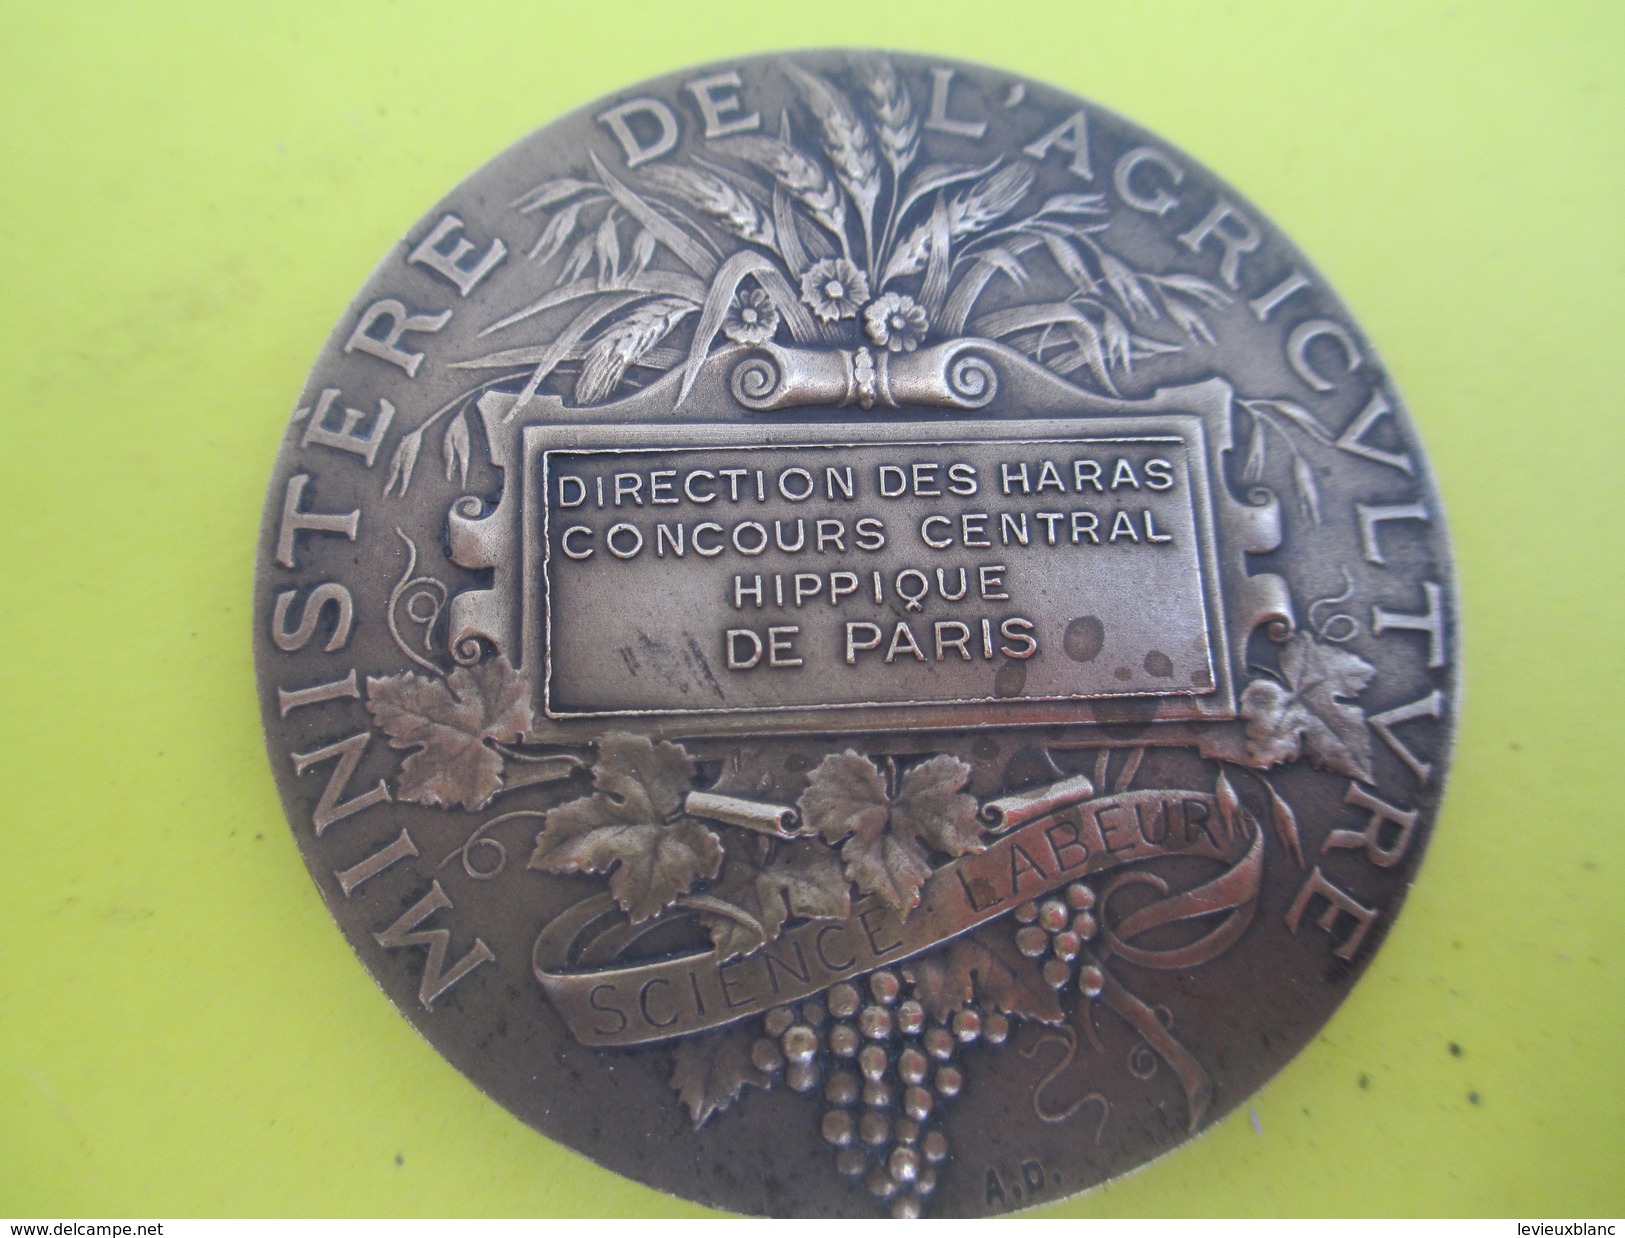 Médaille De Table/Minist. De L'Agric/Direction Des Haras/Concours Central Hippique/Paris/Alphée DUBOIS/Vers 1920  SPO214 - Equitation